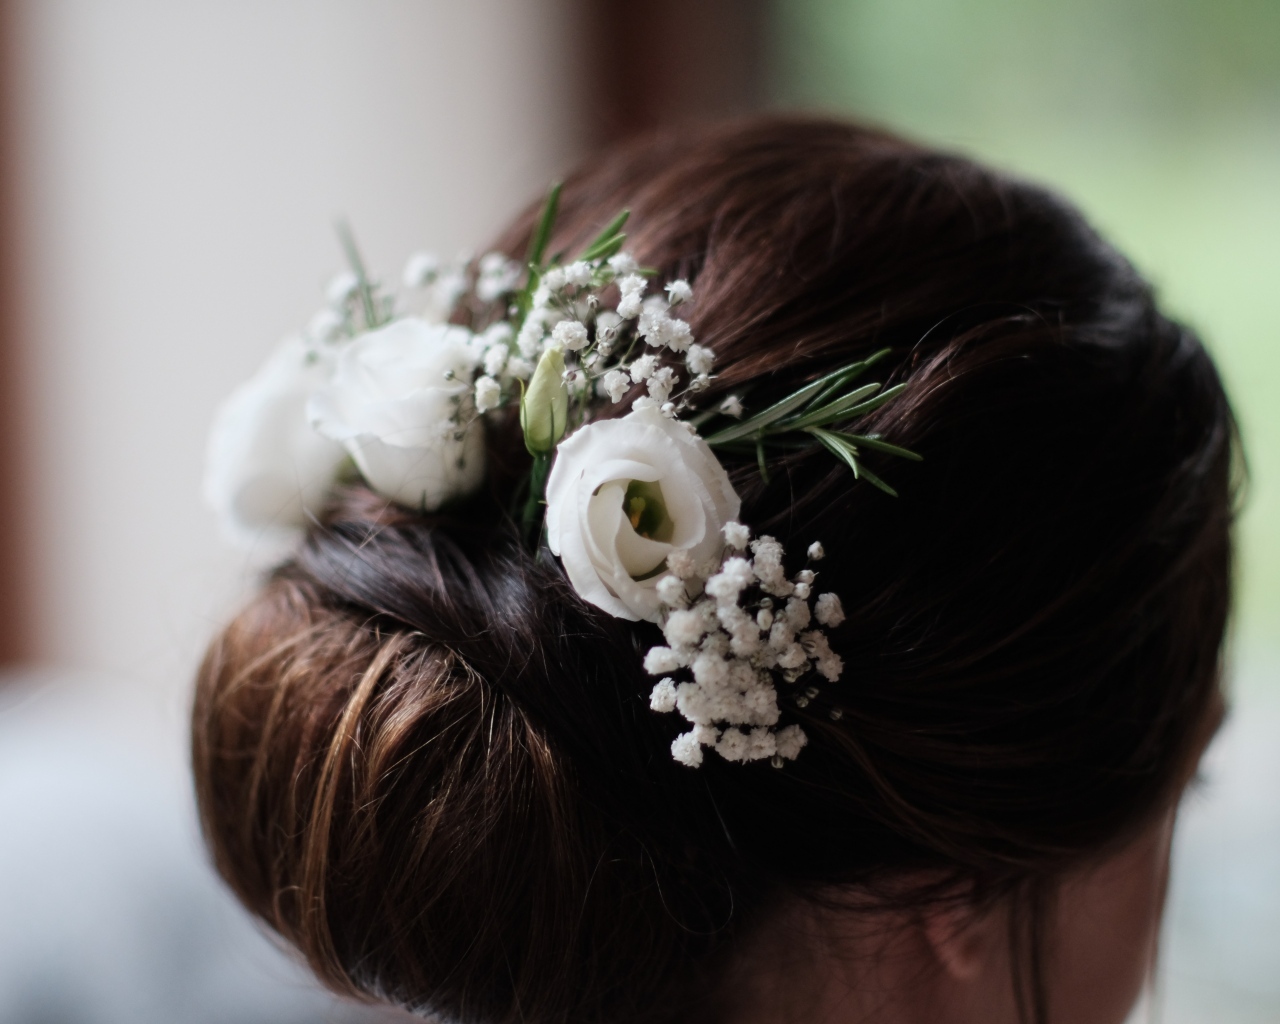 Белые цветы эустомы в свадебной прическе